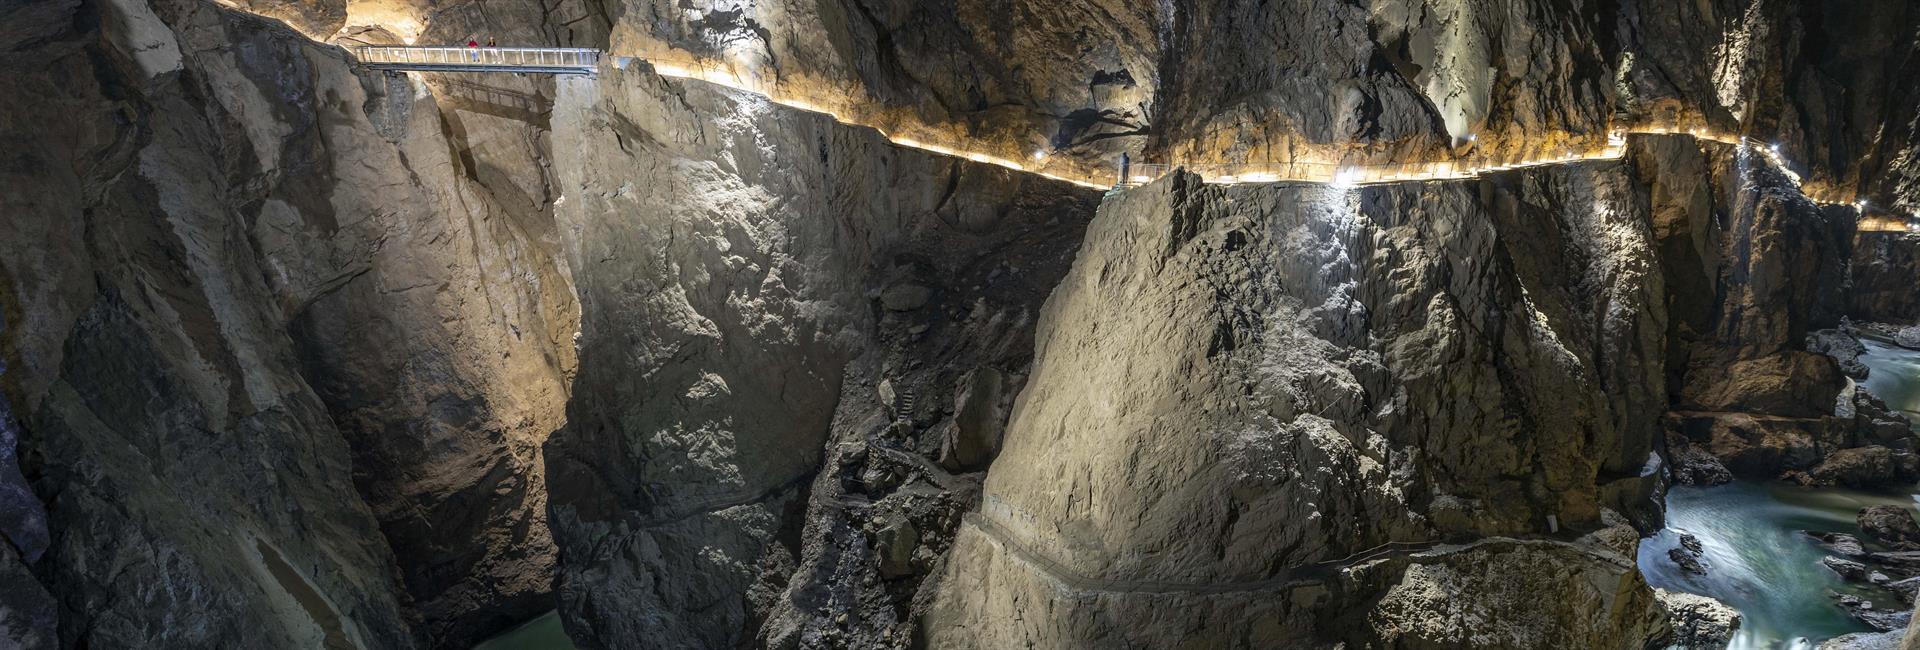 Kjer so doma Škocjanske jame - Unesco svetovna dediščina.